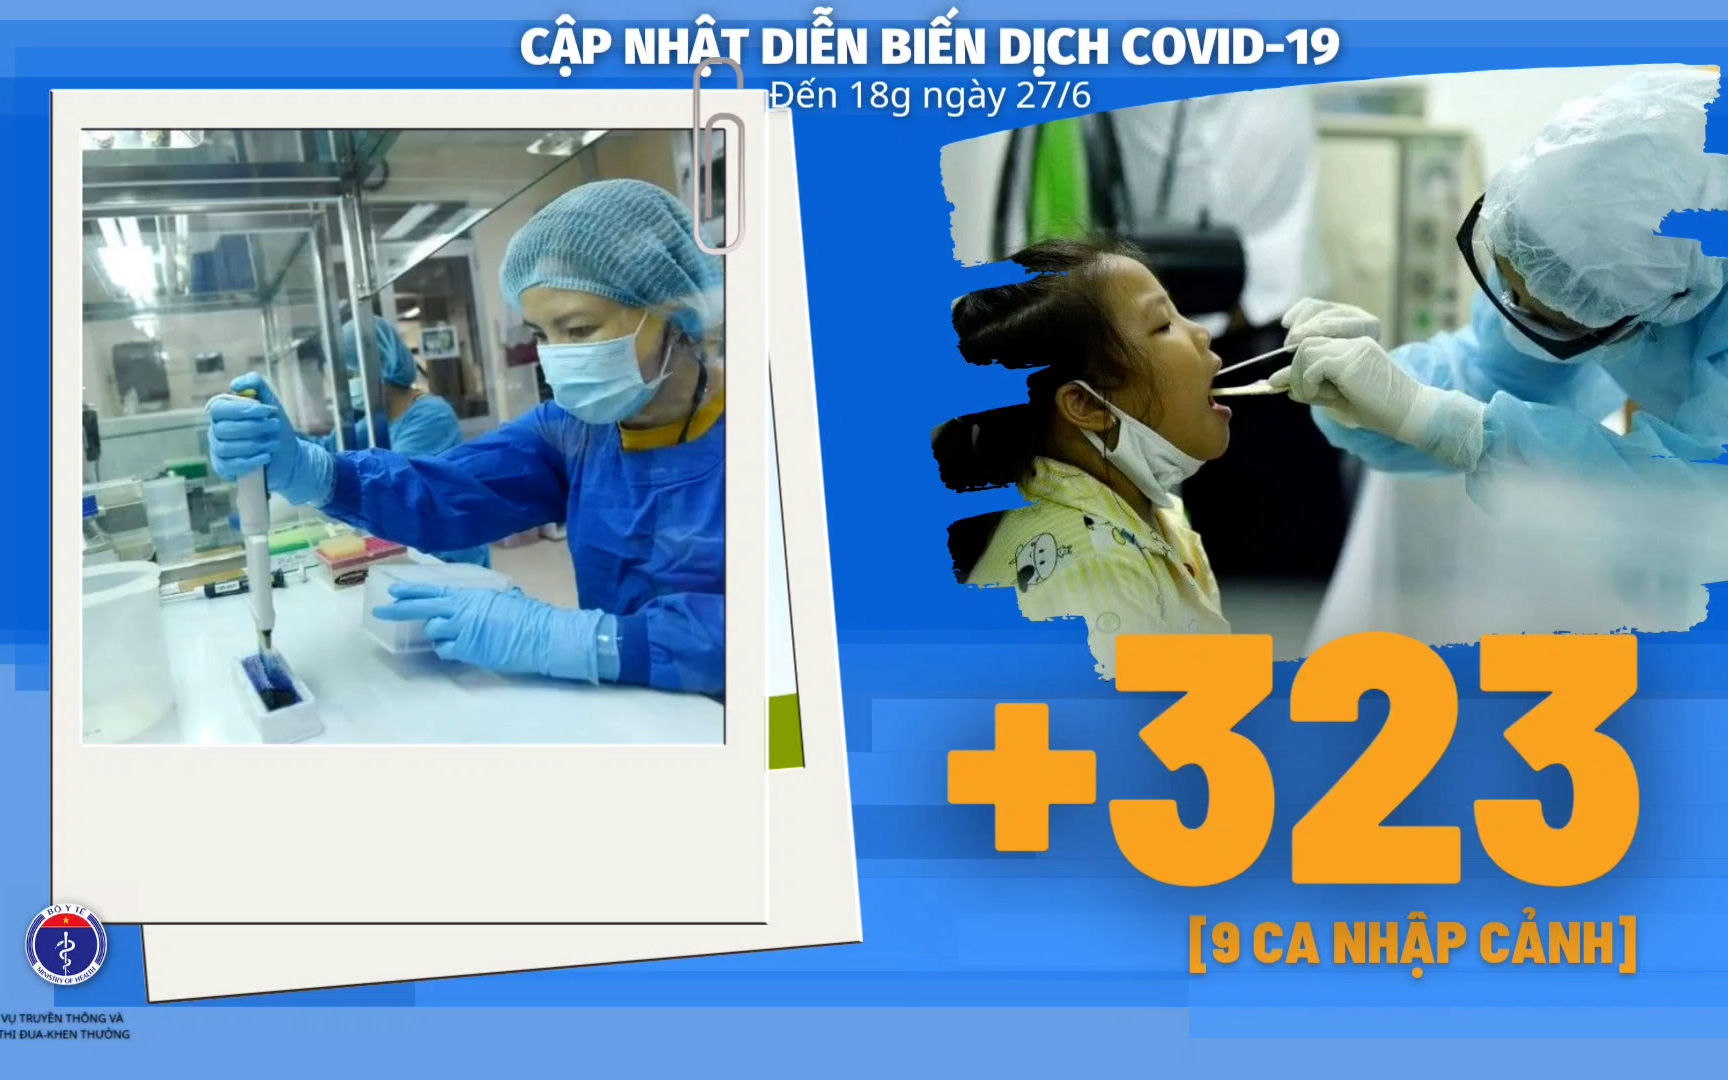 Bộ Y tế: Diễn biến dịch Covid-19 tính đến 18h ngày 27/6, thêm 323 ca mới, cơ bản vẫn kiểm soát được tình hình